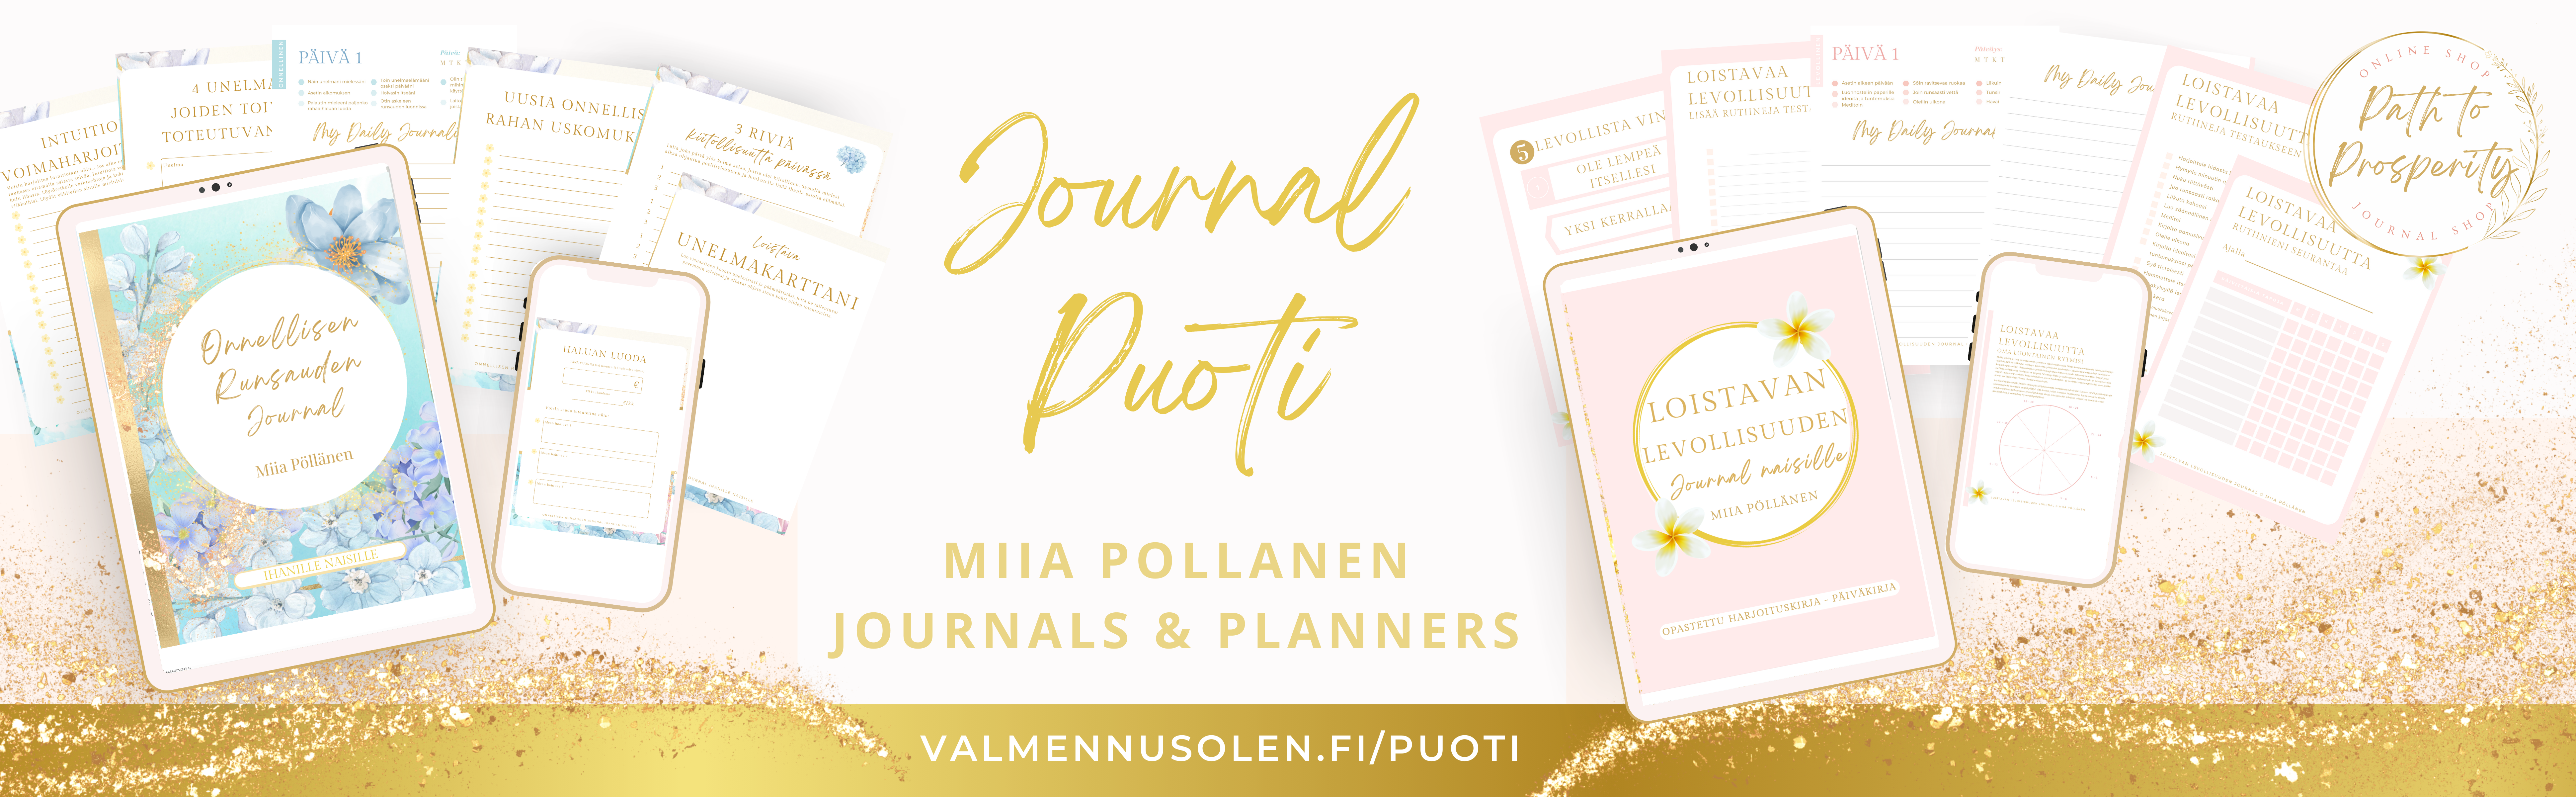 Onnellisen runsauden journal-puoti rahavalmentaja Miia Pöllänen